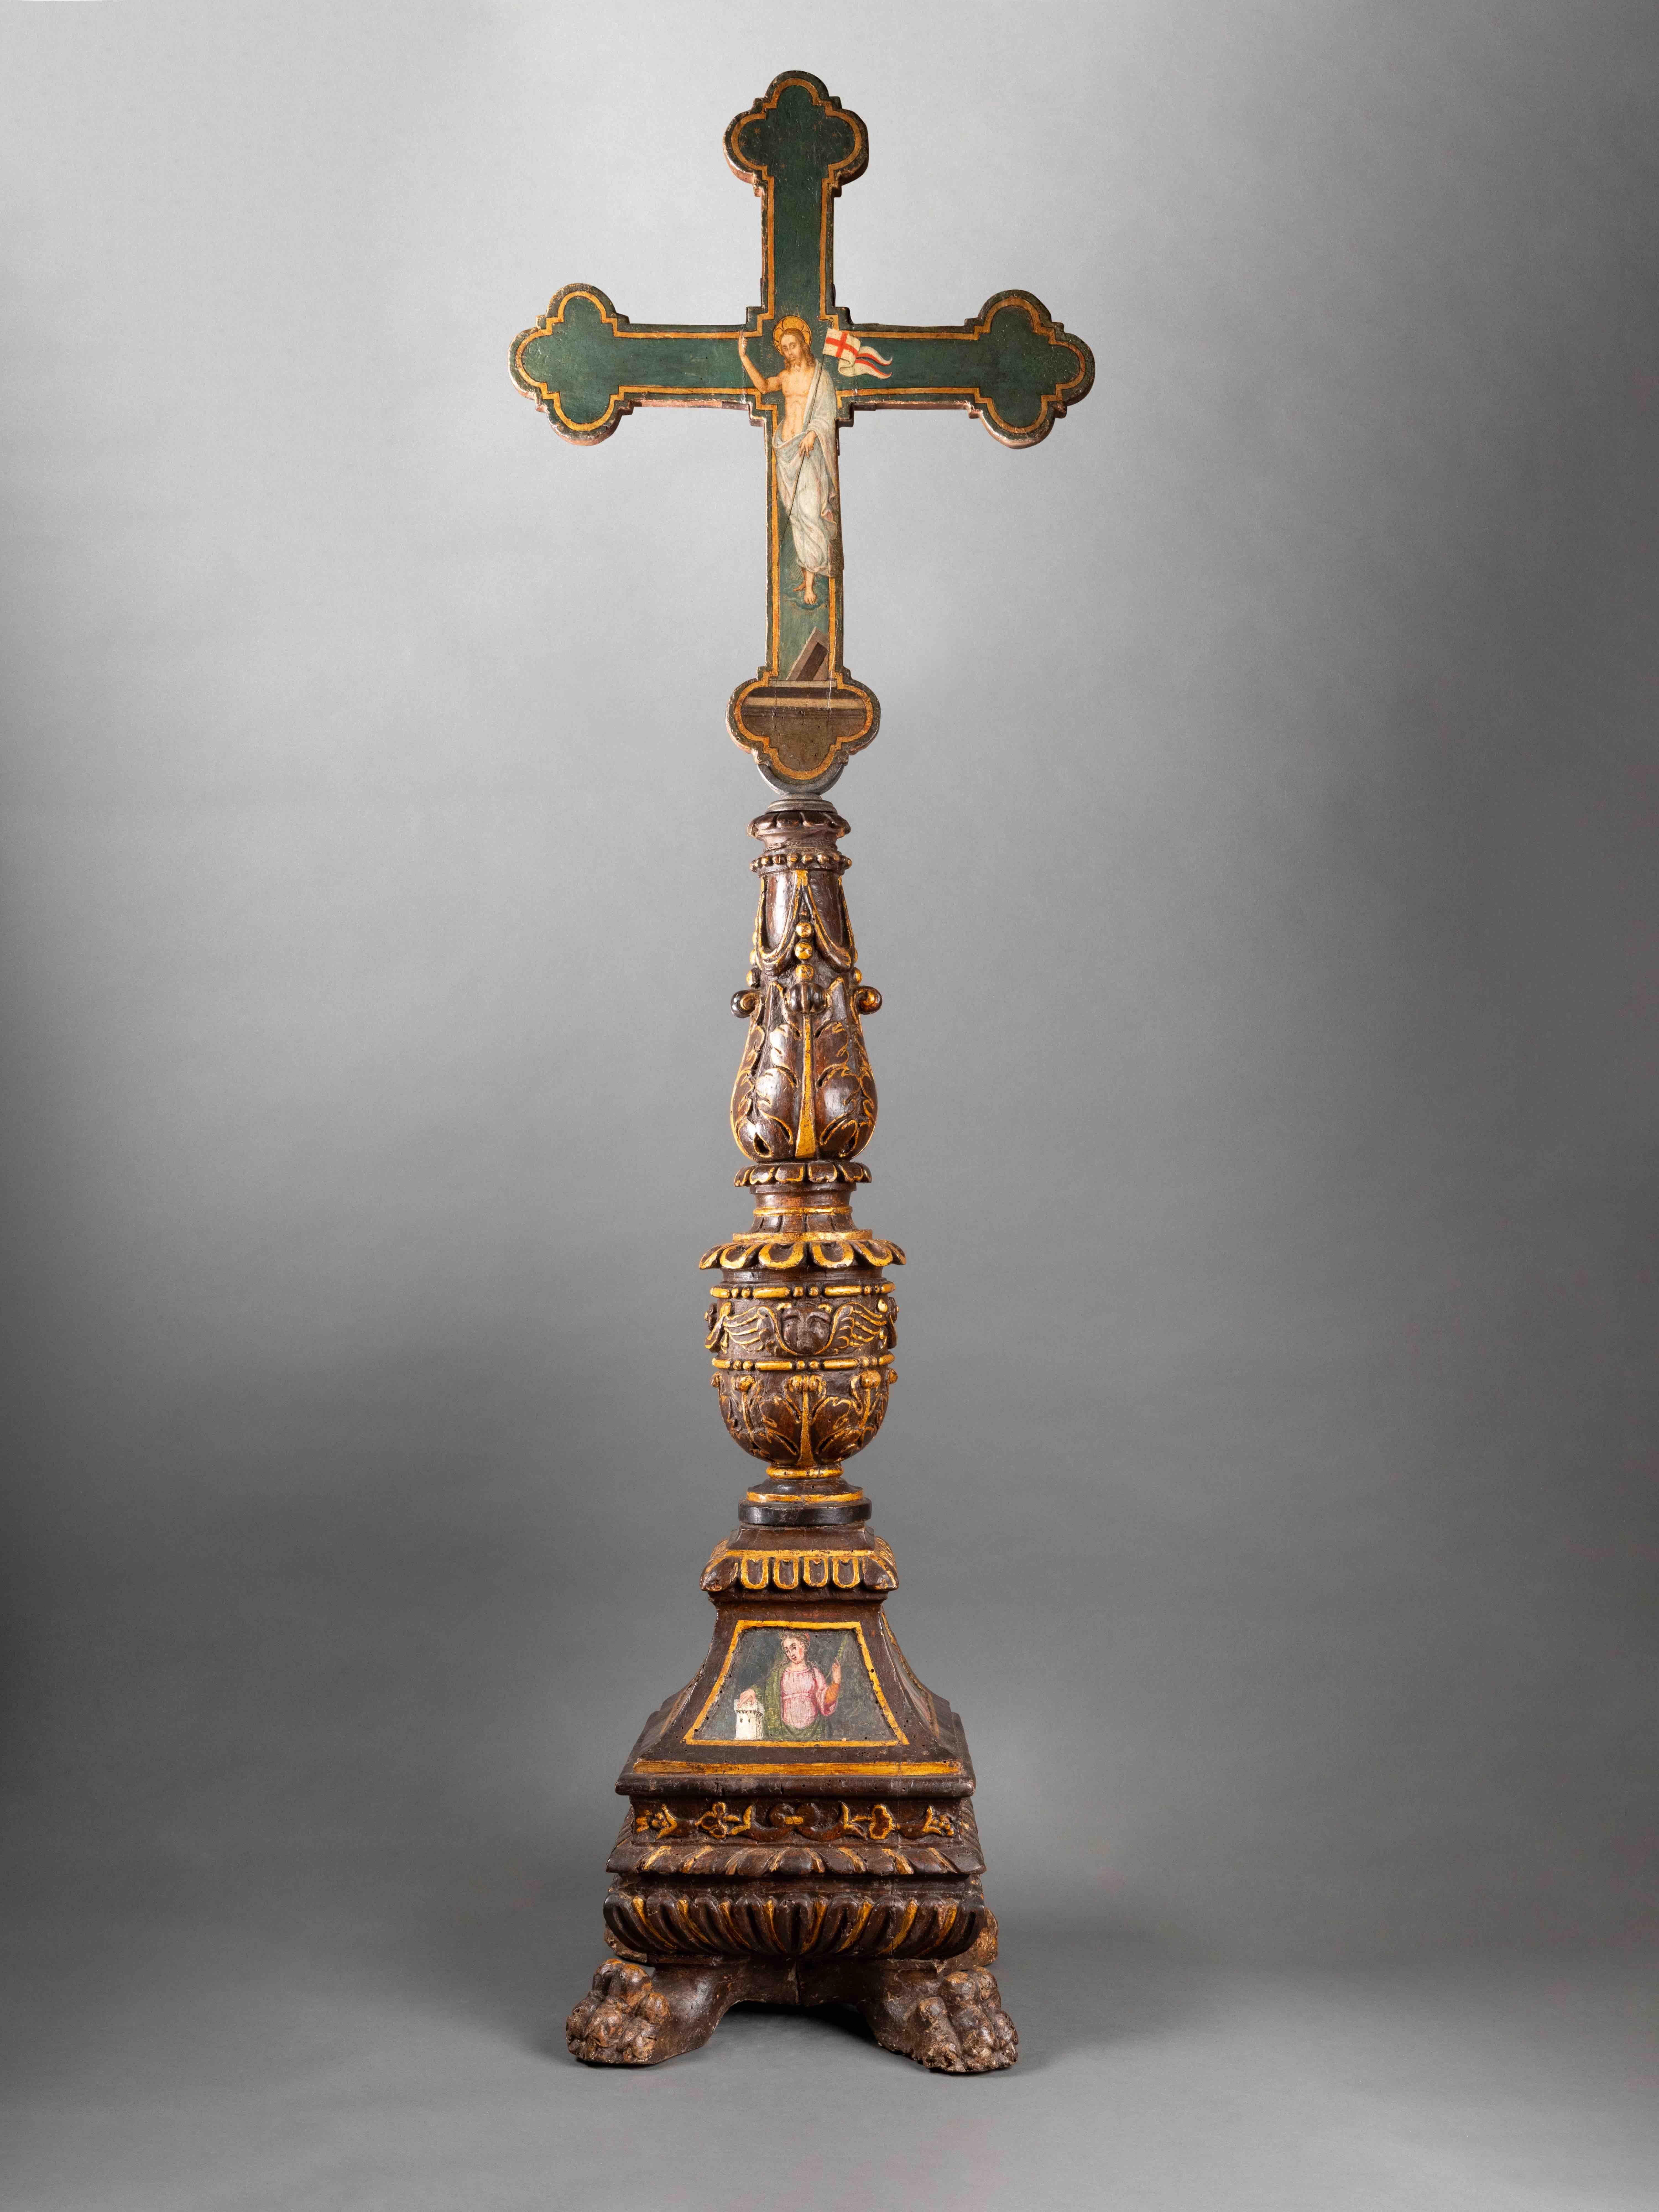 Base d'un candélabre en bois sculpté, polychrome et doré ; croix  peinte sur les deux faces. 
Ombrie ou Toscane, XVIe siècle 
136 x 43,5 x 30 cm
(La croix et la base du candélabre ont été assemblées ultérieurement)

La base du candélabre est